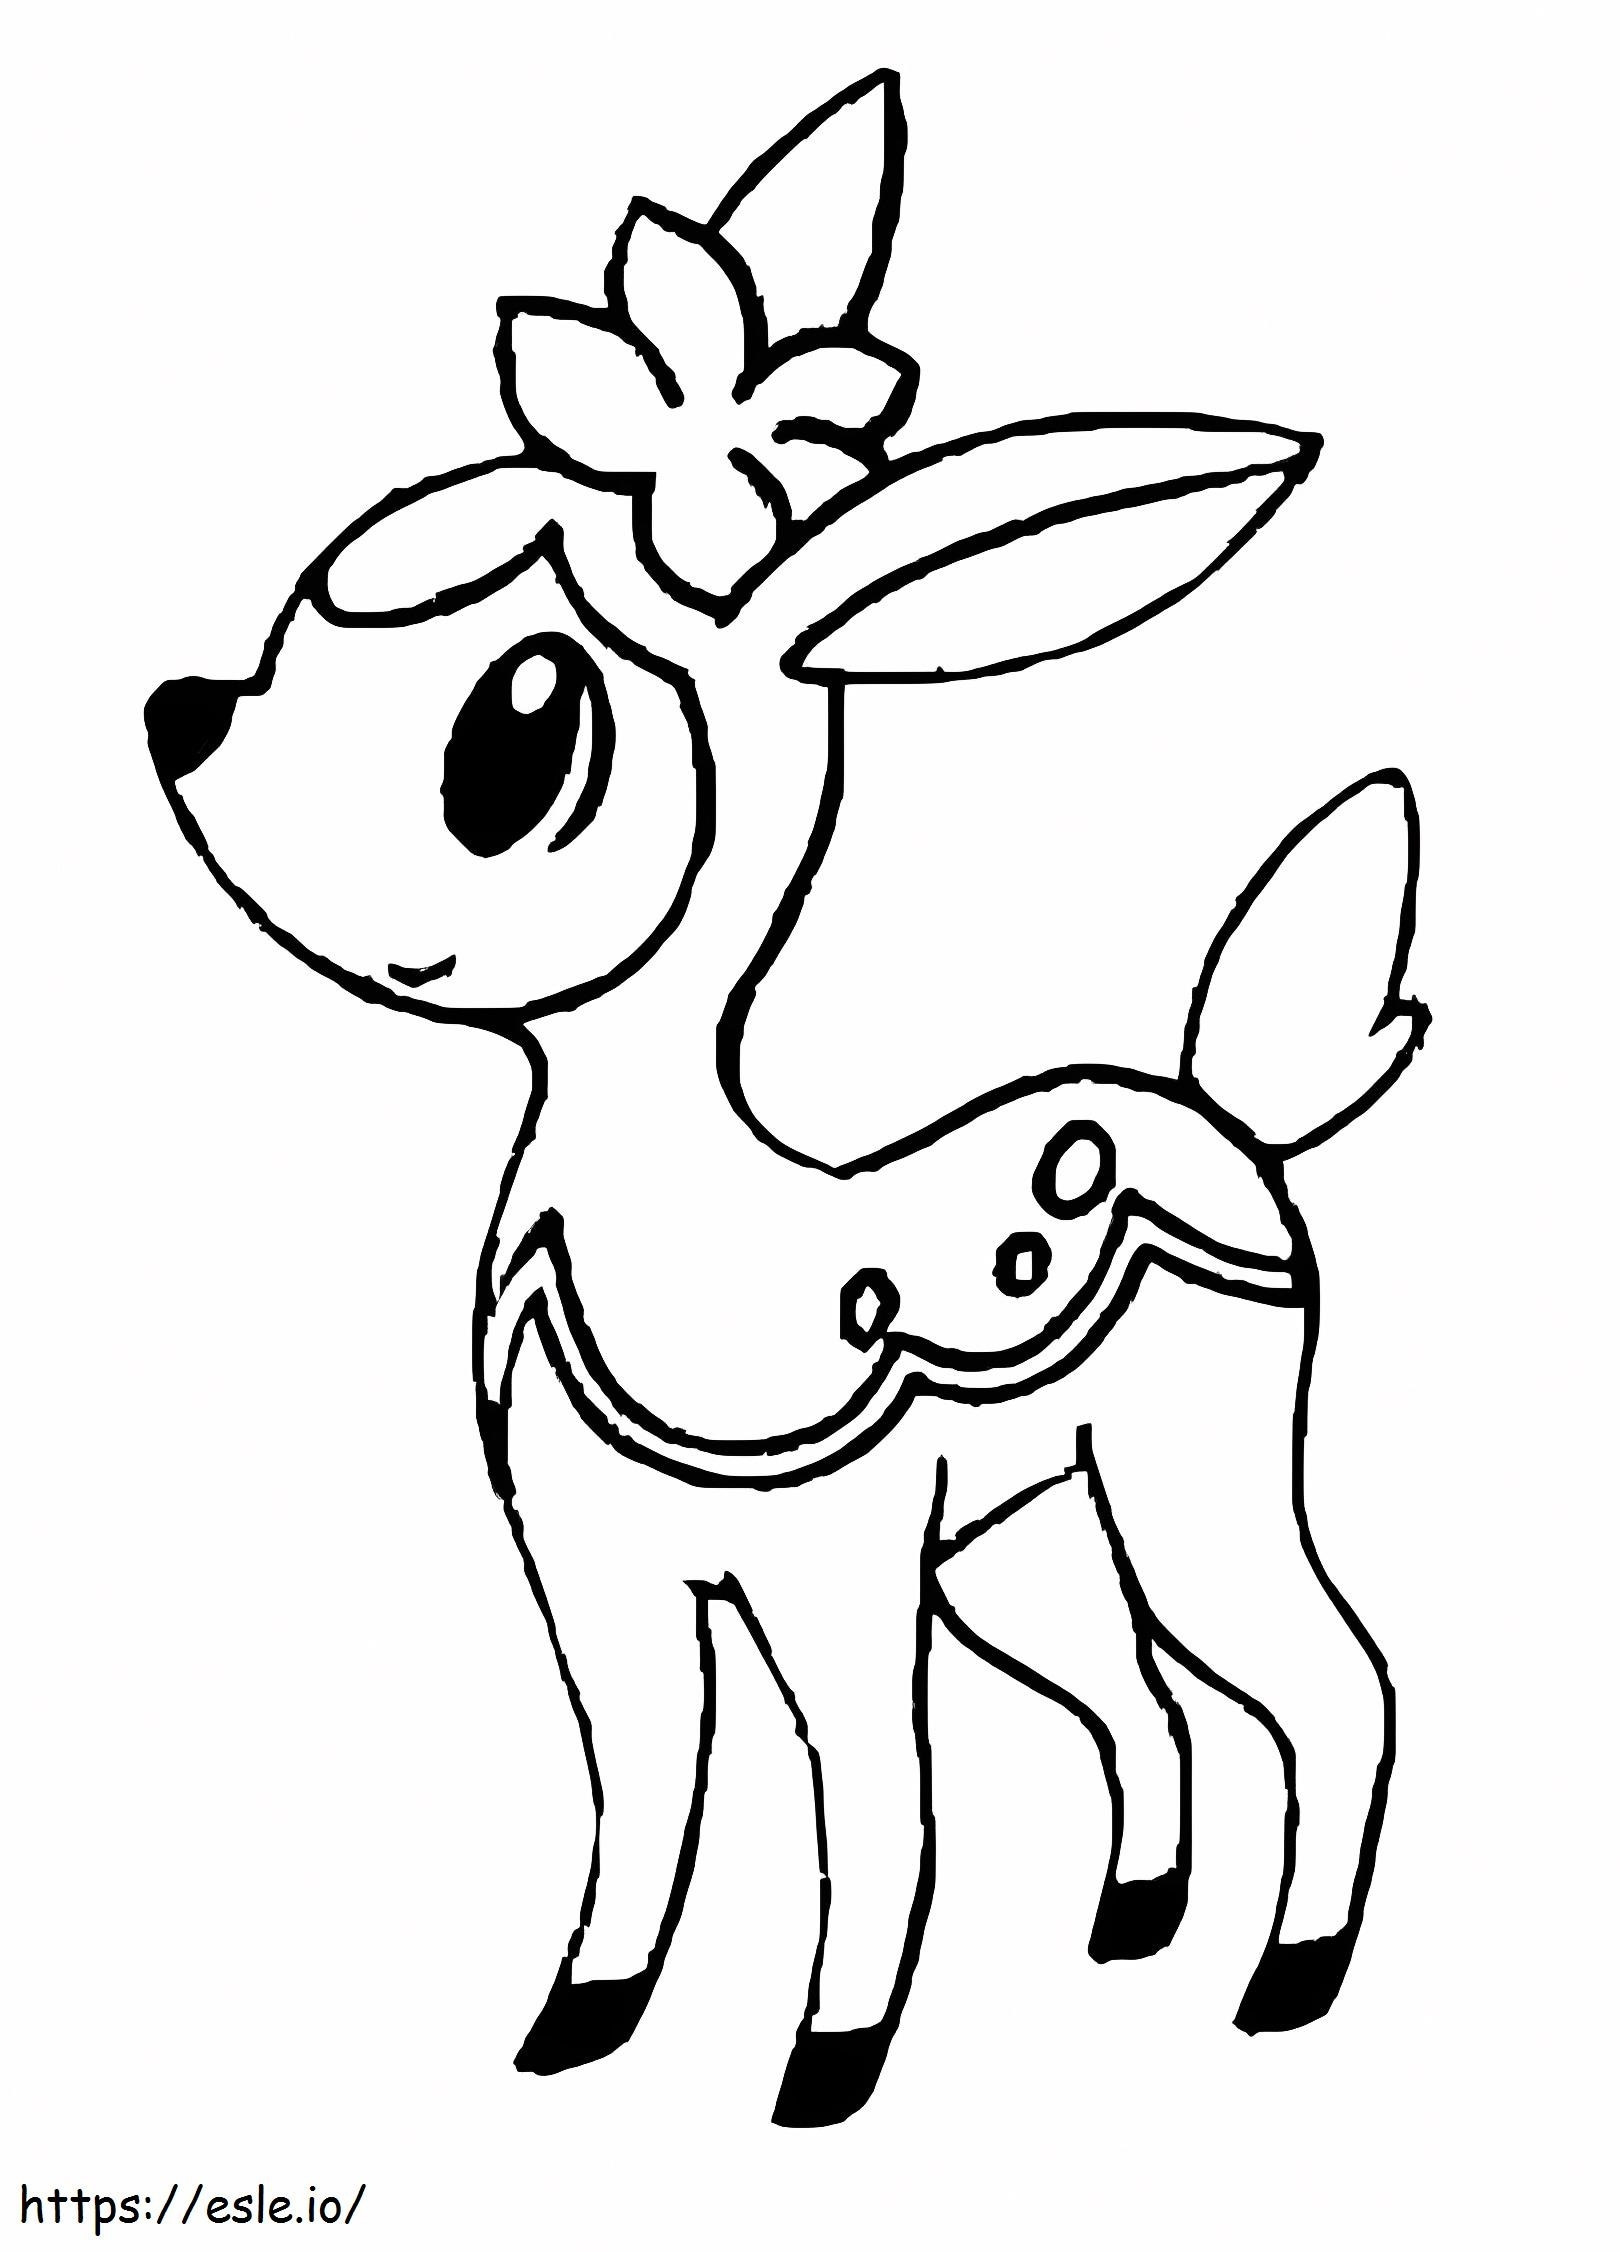 Coloriage Adorable Pokémon Cerf à imprimer dessin